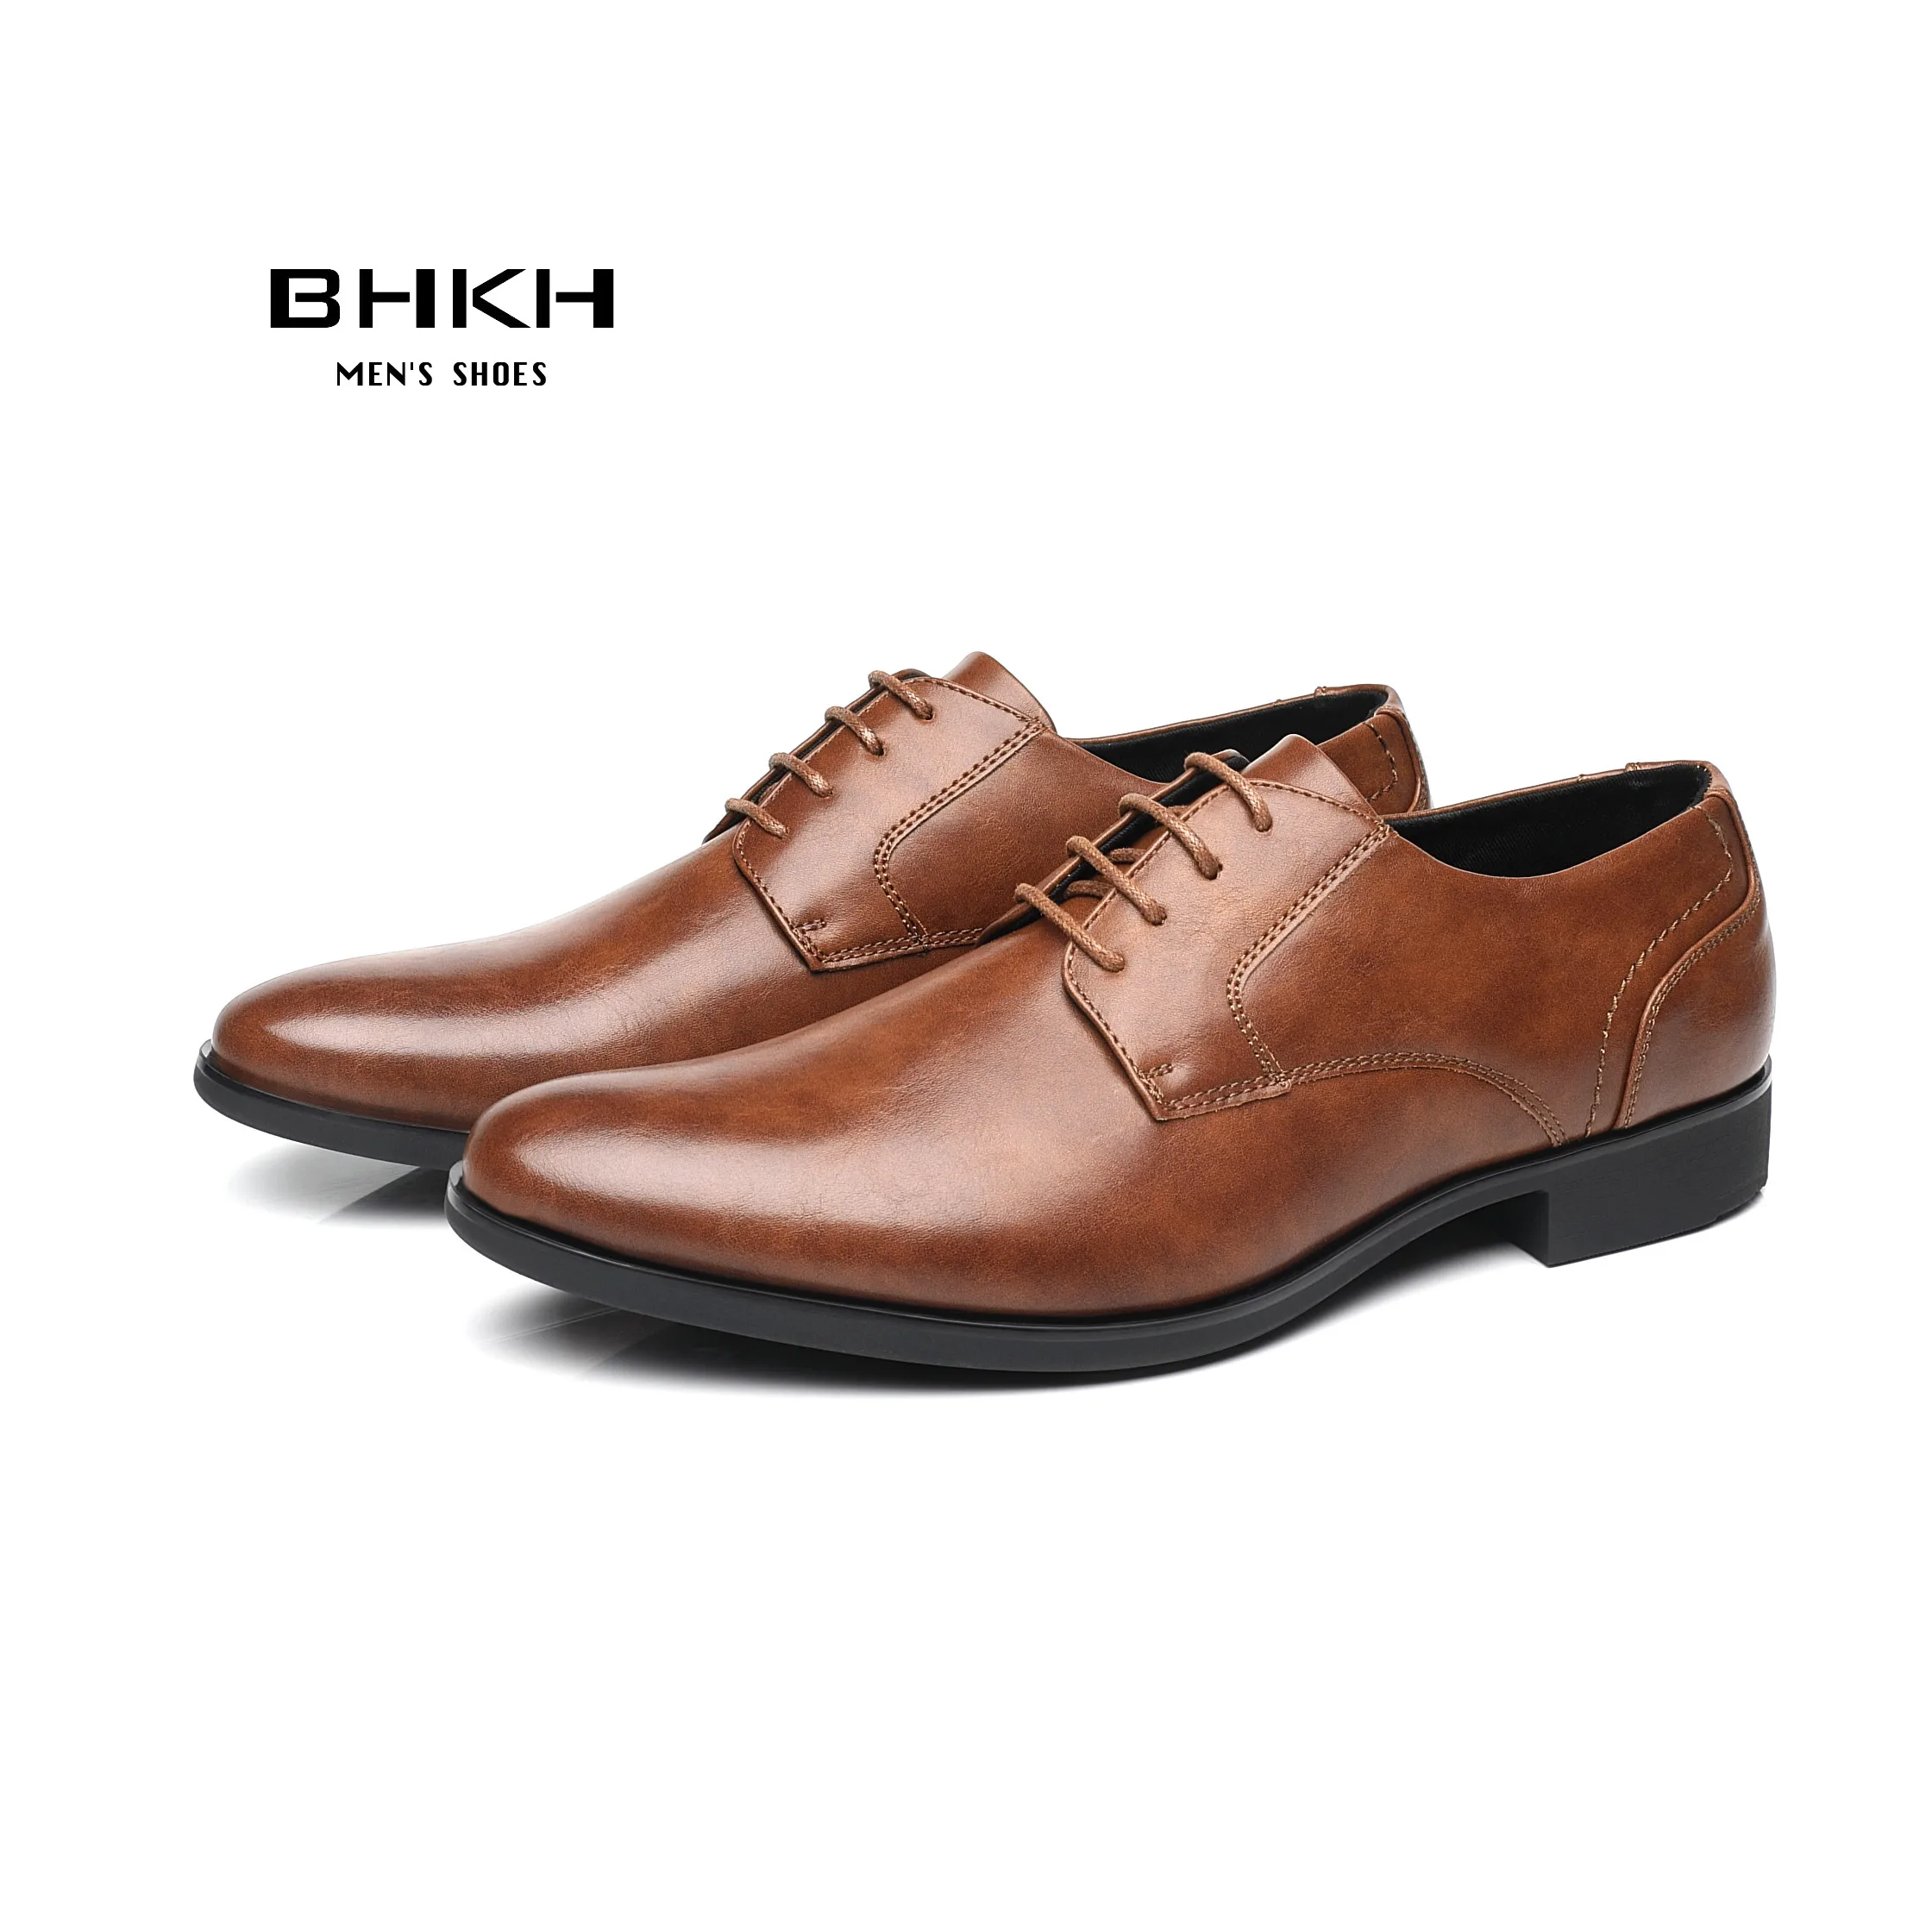 

Мужские строгие туфли на шнуровке BHKH, весна-осень 2022, мужские свадебные туфли, умная деловая обувь для офиса и работы для мужчин